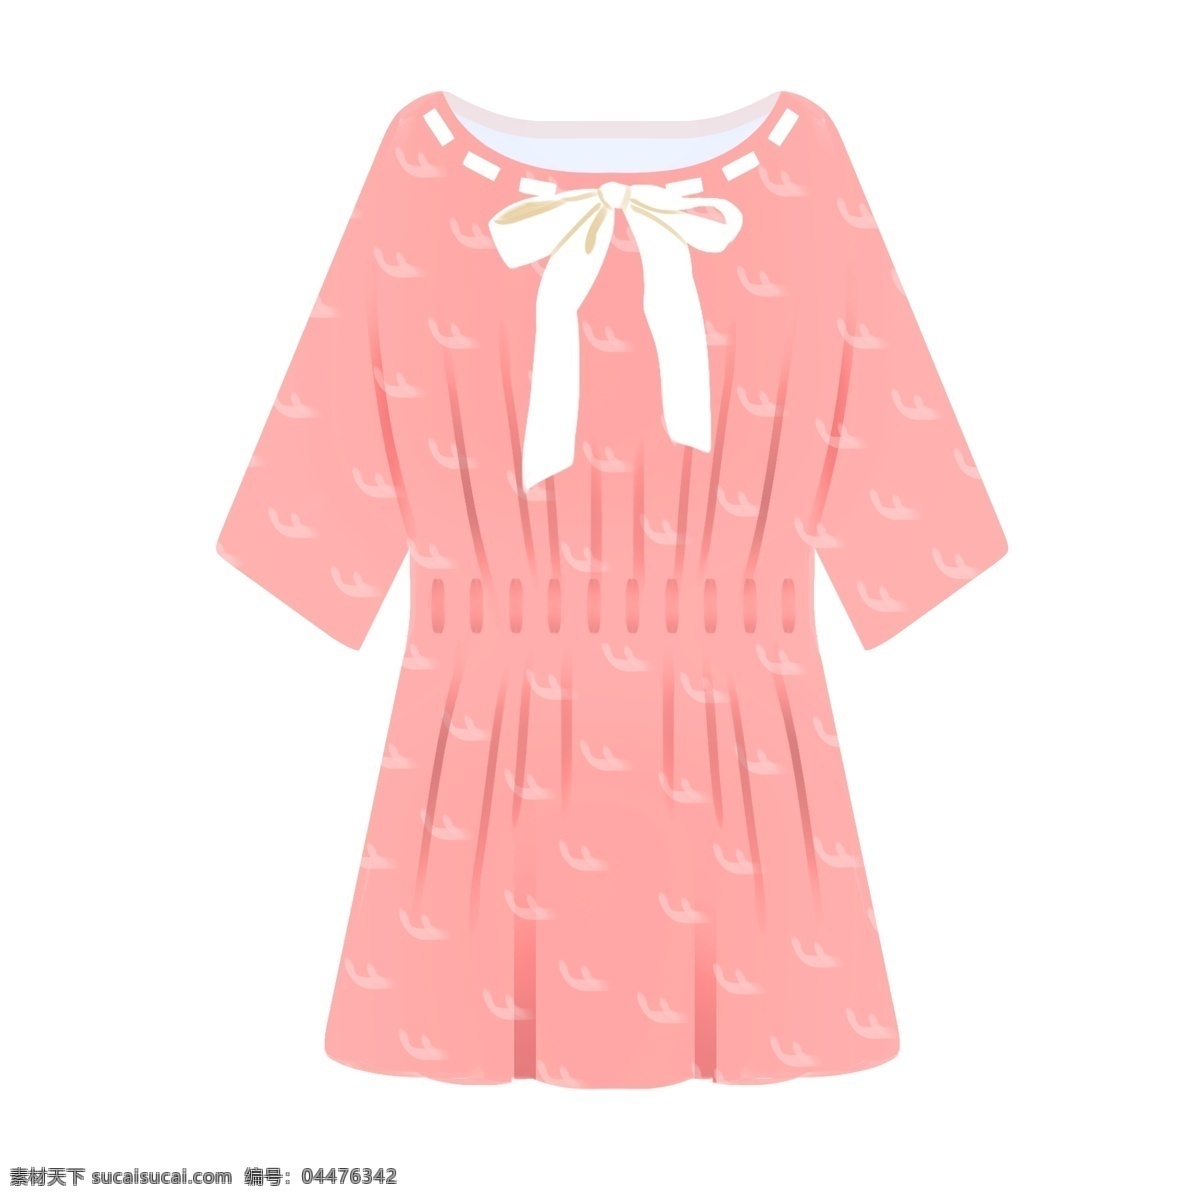 粉色裙子衣物 蝴蝶结 粉色 裙子